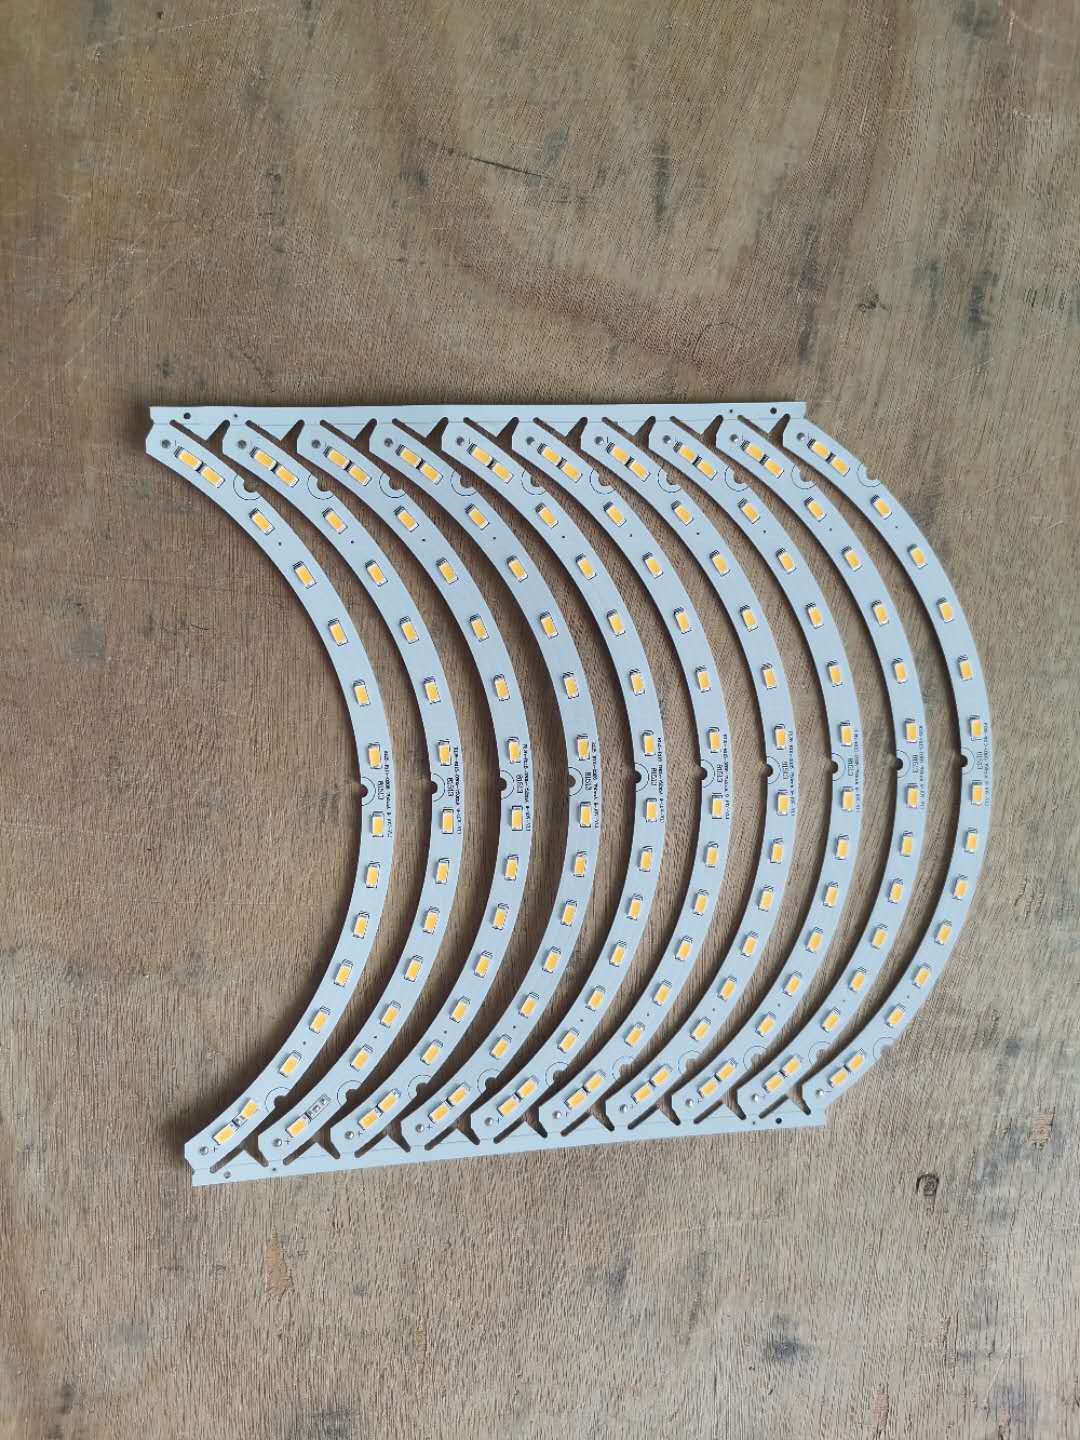 PCB铝基板 PCB玻纤板 双面铝基板 铜基板